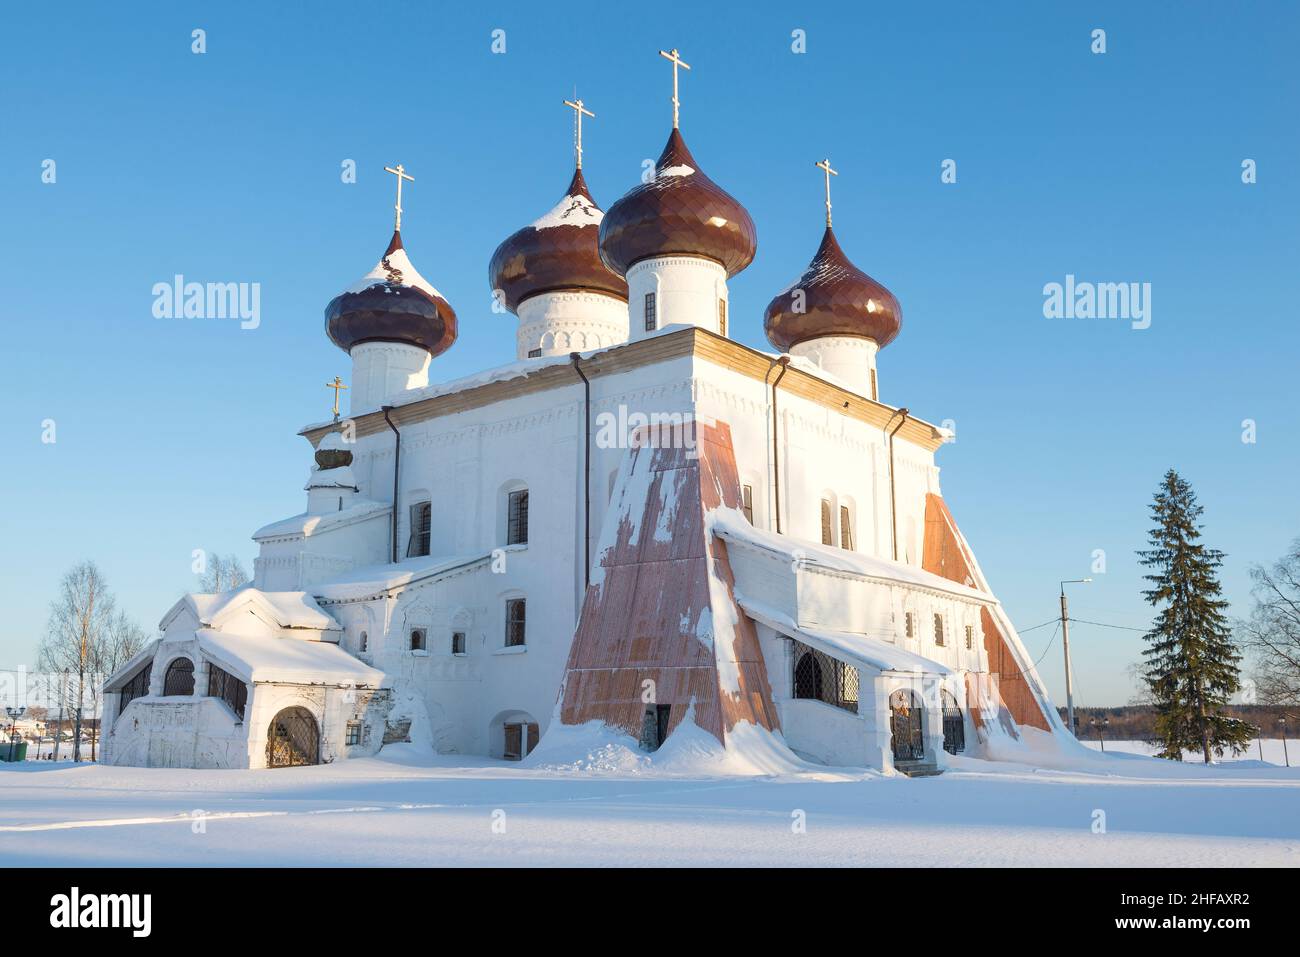 Ancienne cathédrale de la Nativité le jour de février gelé.Kargopol.Région d'Arkhangelsk, Russie Banque D'Images